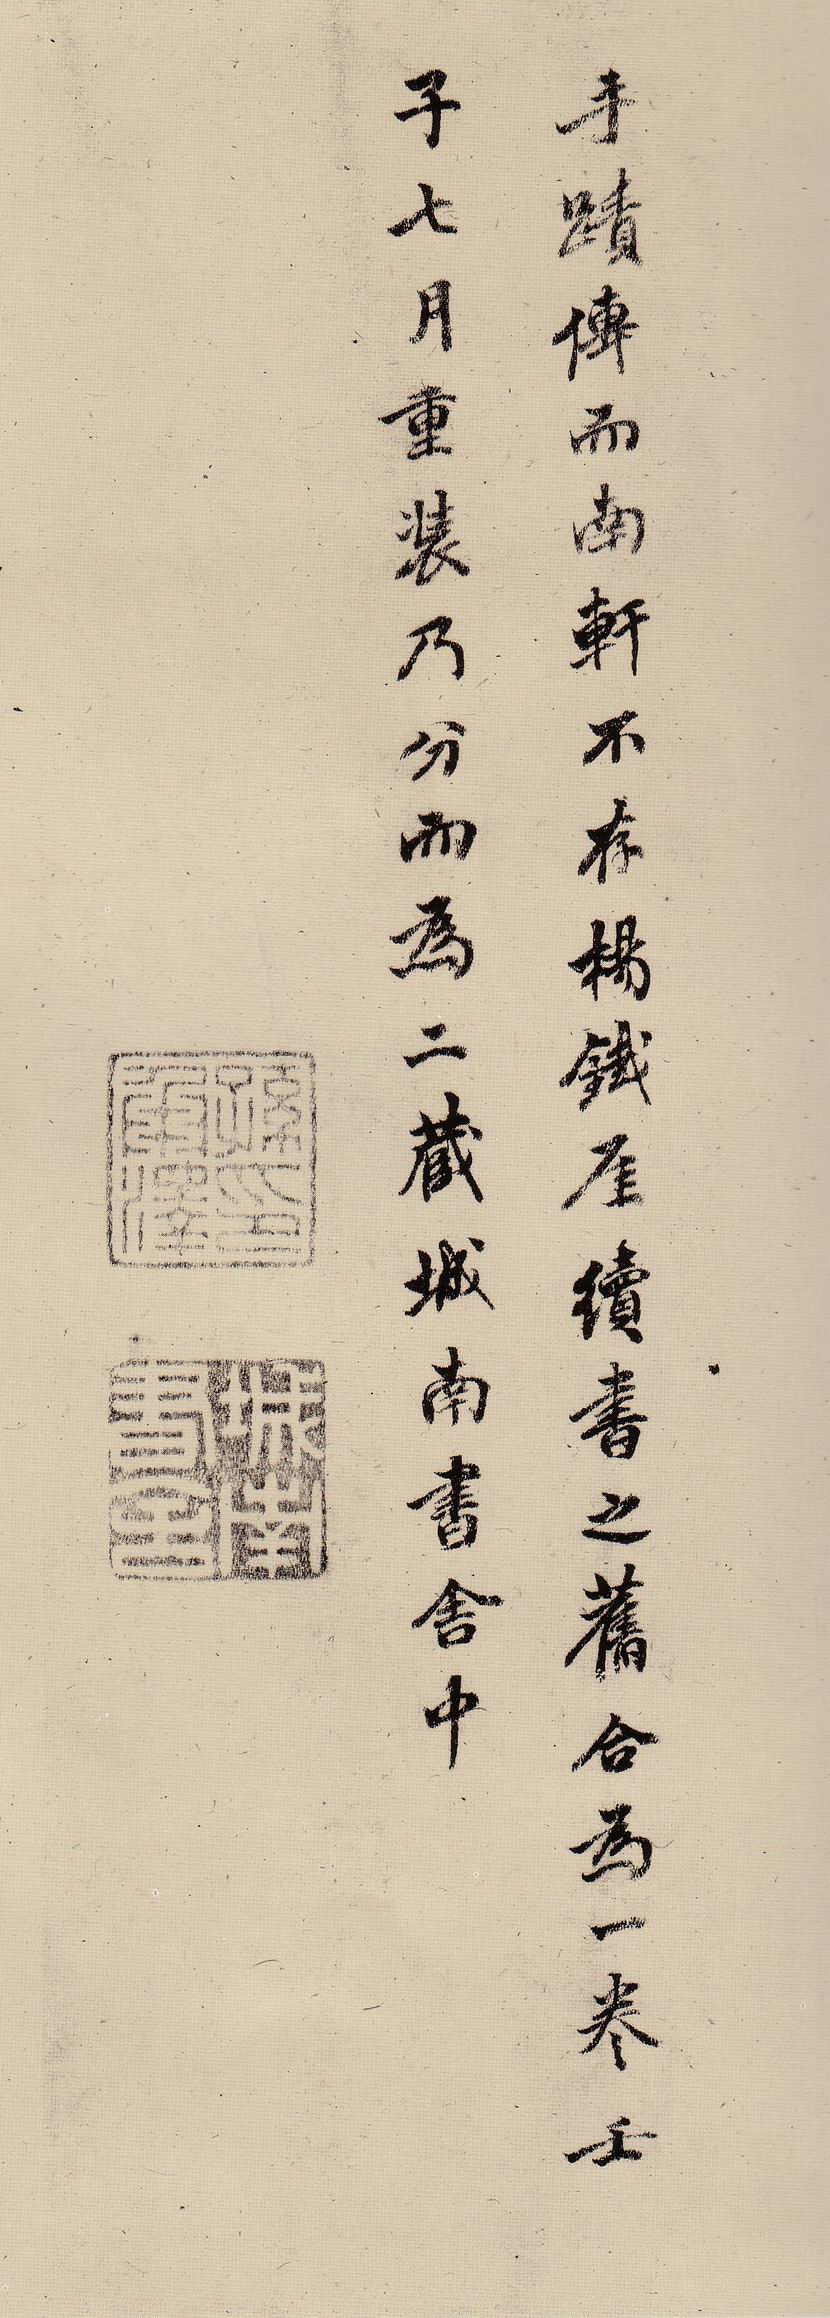 杨维桢《城南唱和诗册》诗卷(图11)